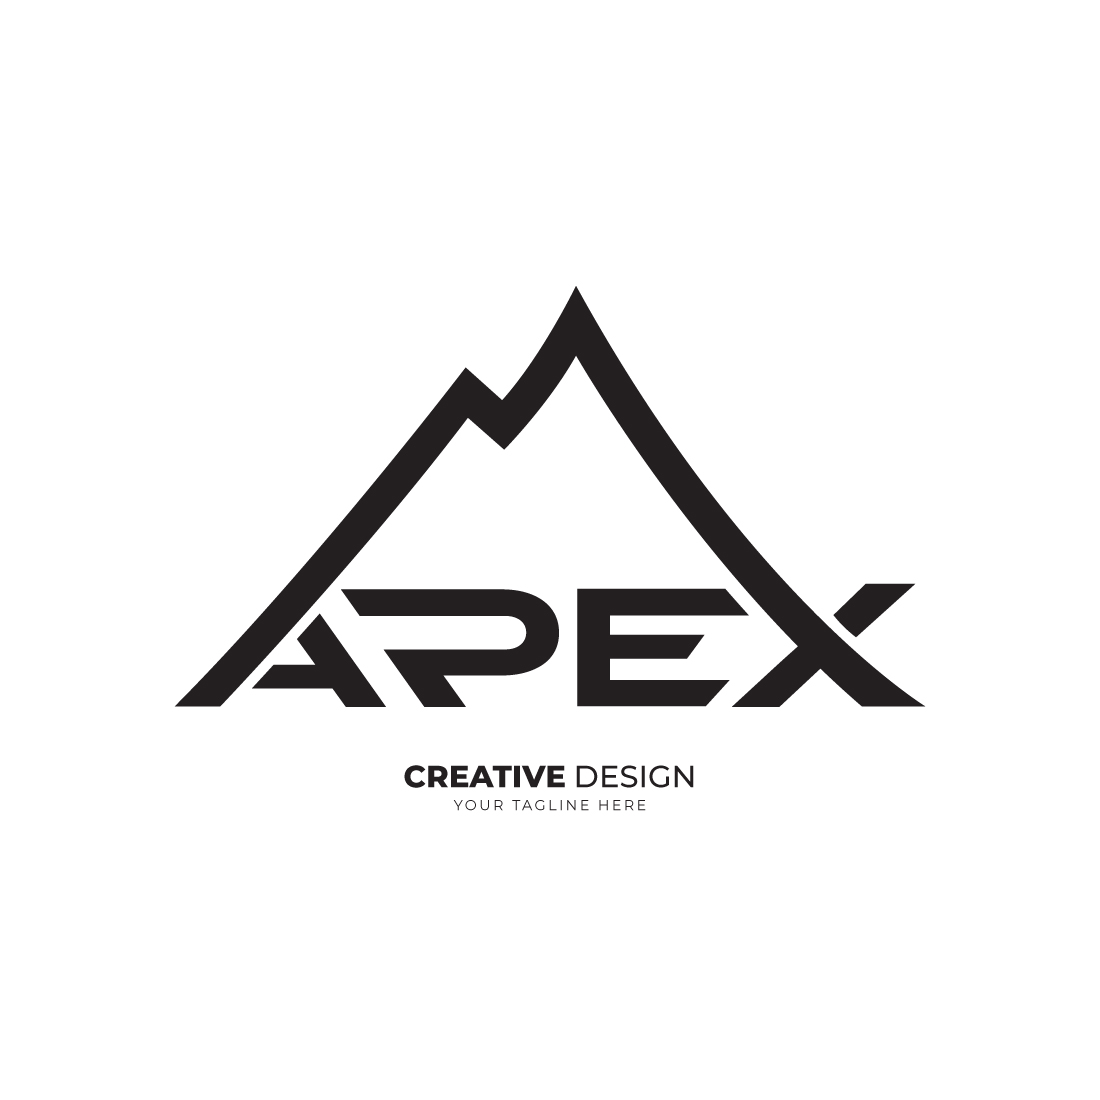 Apex Mountain logo cover image.